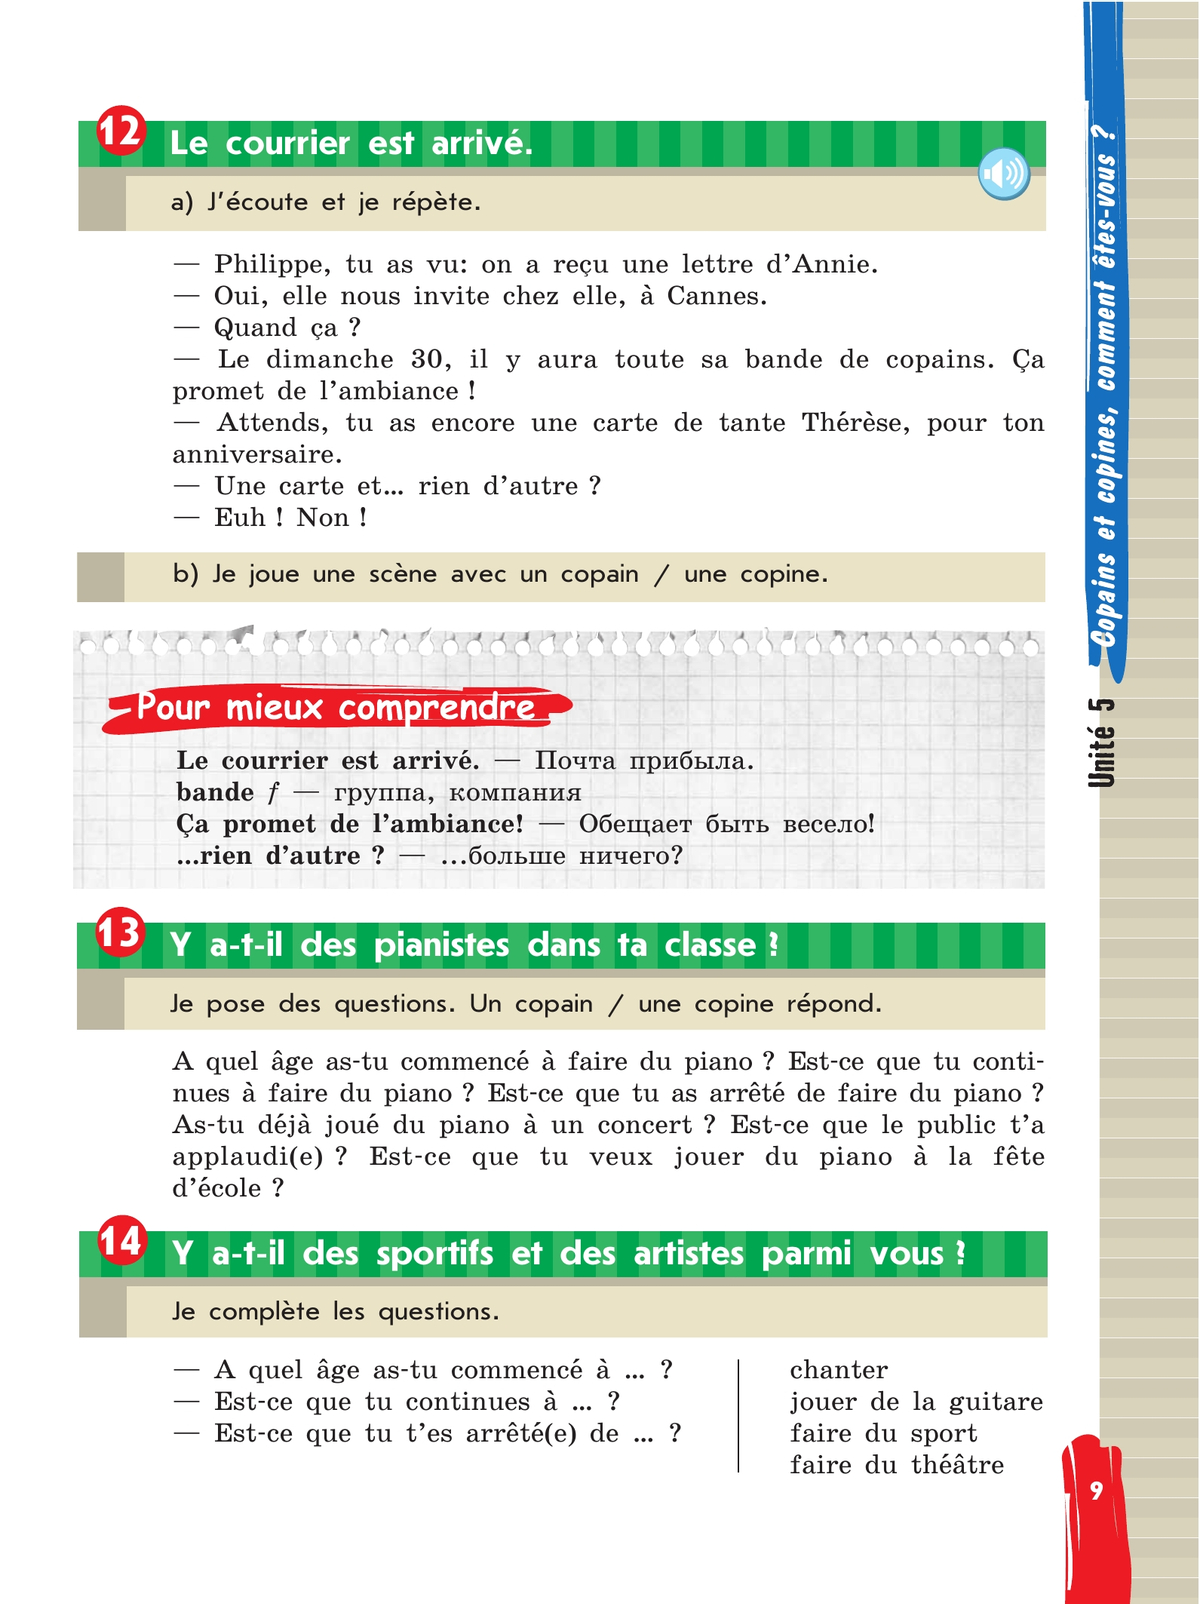 Французский язык. 5 класс. Учебник. В 2 ч. Часть 2 8